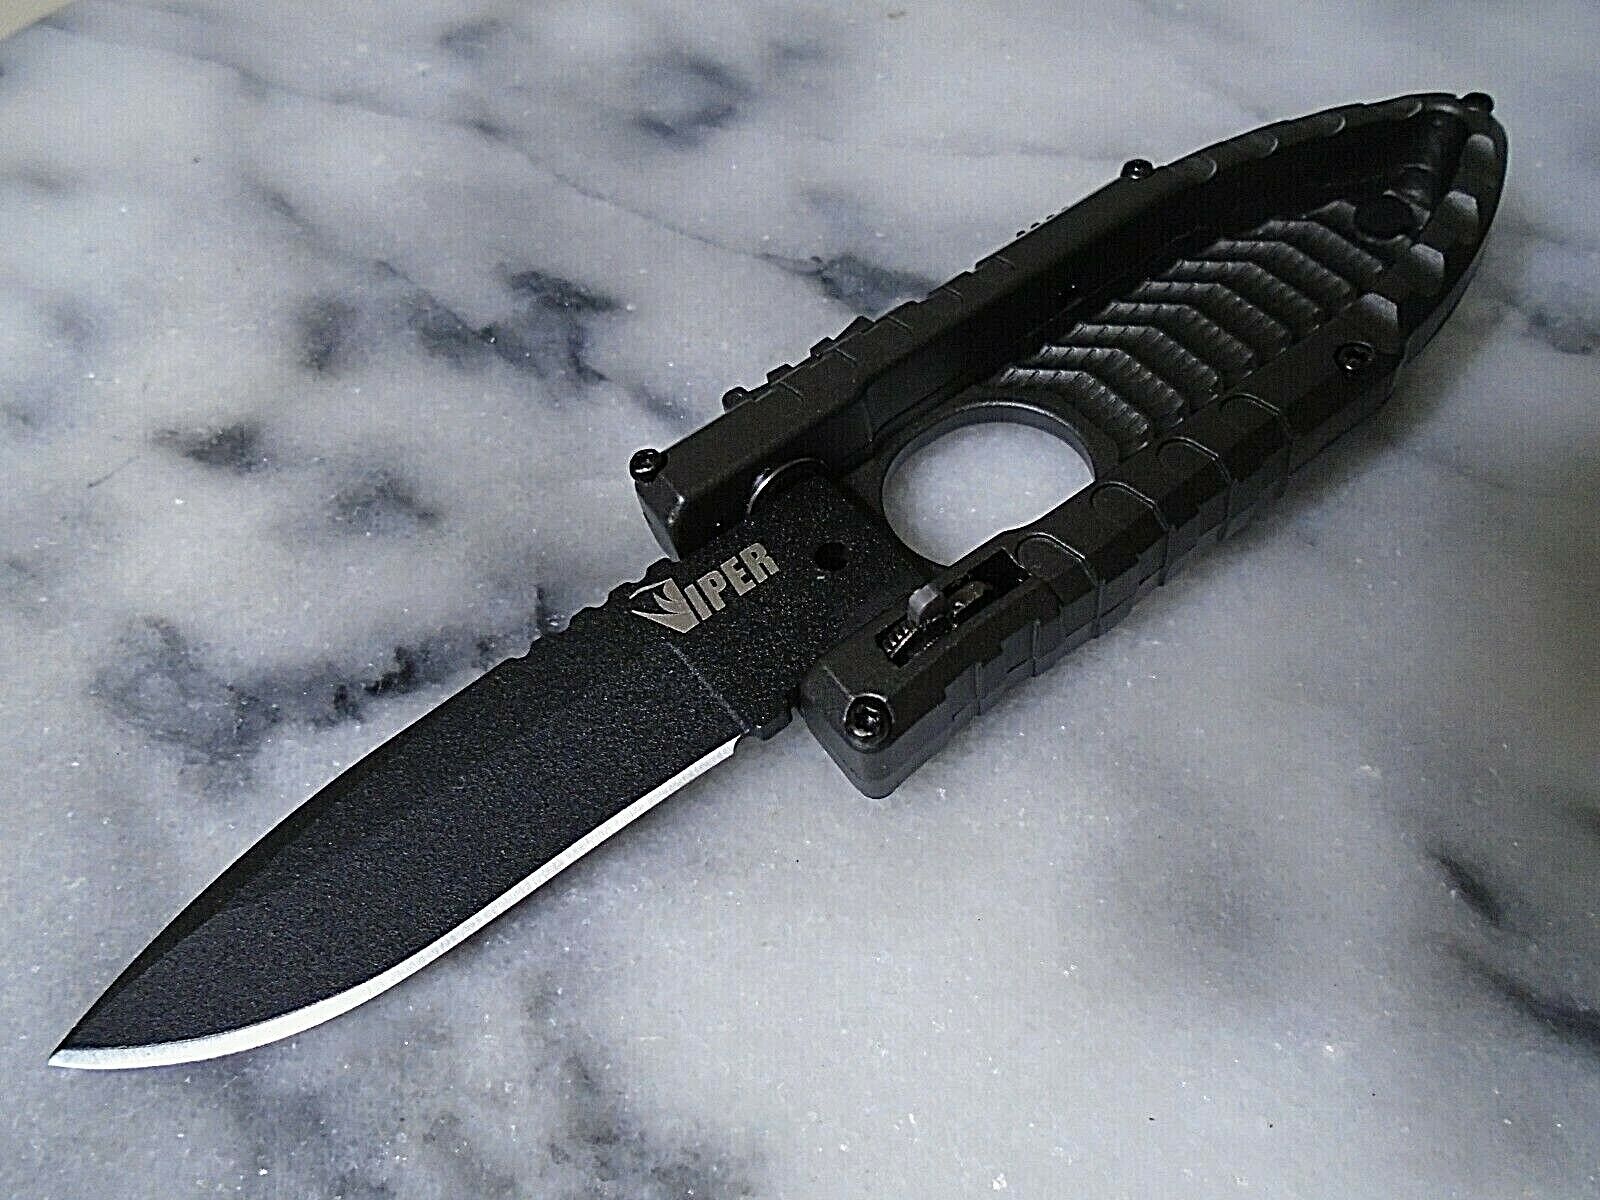 Schrade Viper Side Assisted Open Pocket Knife 4034 SS Slide Lock Black Folder